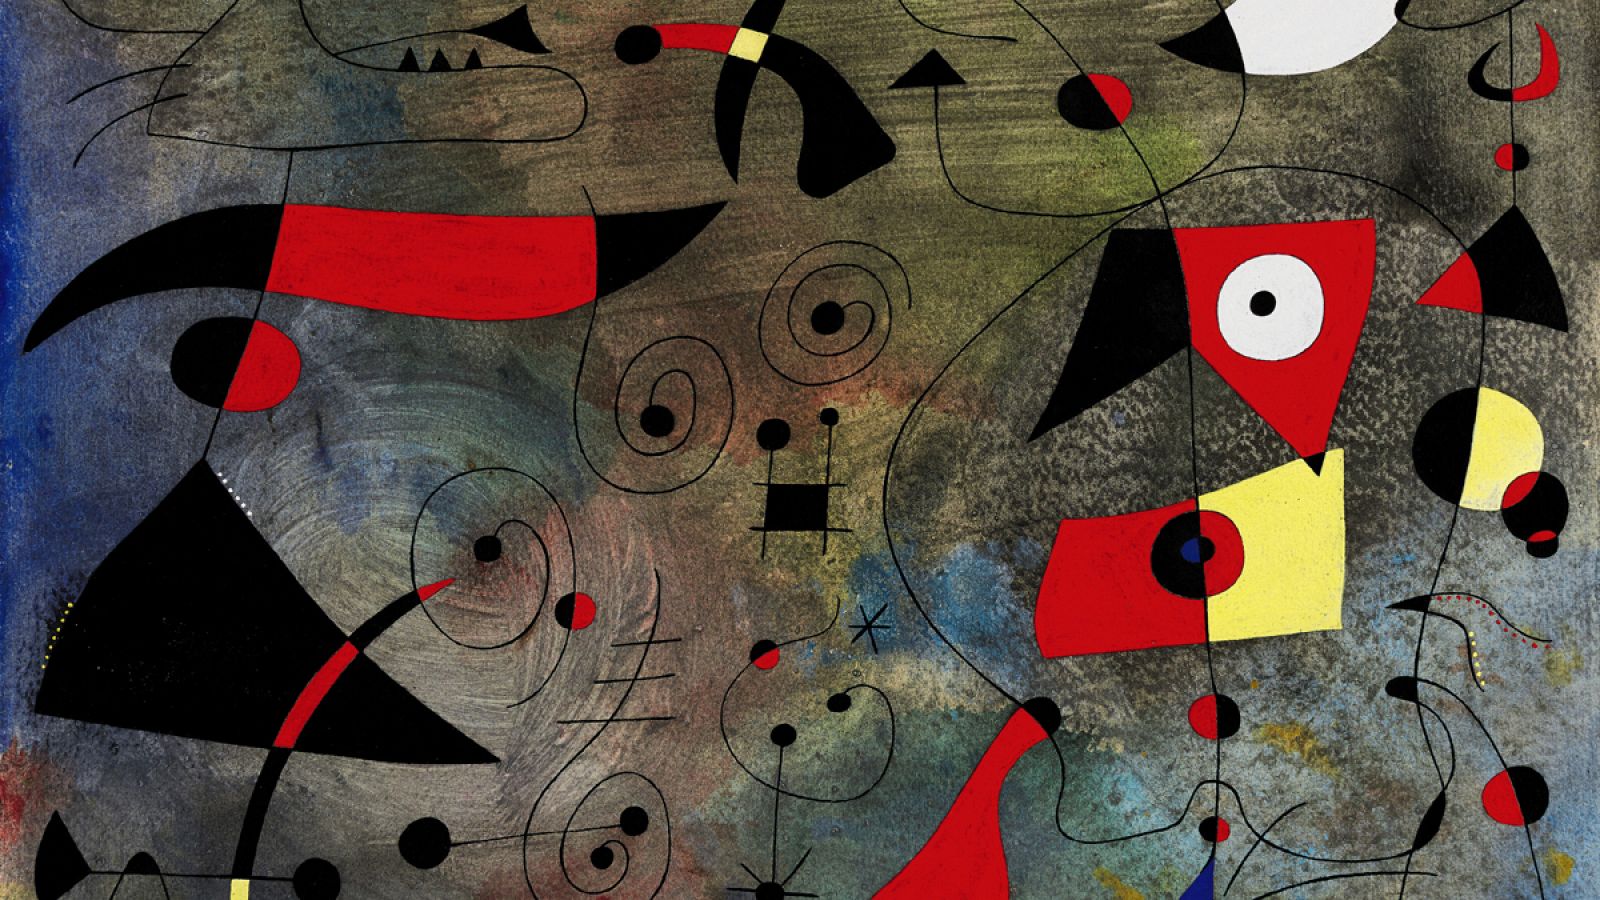 Detalle de "Femme et ouseaux", de Miró, subastada en la sala Sotheby's de Londres